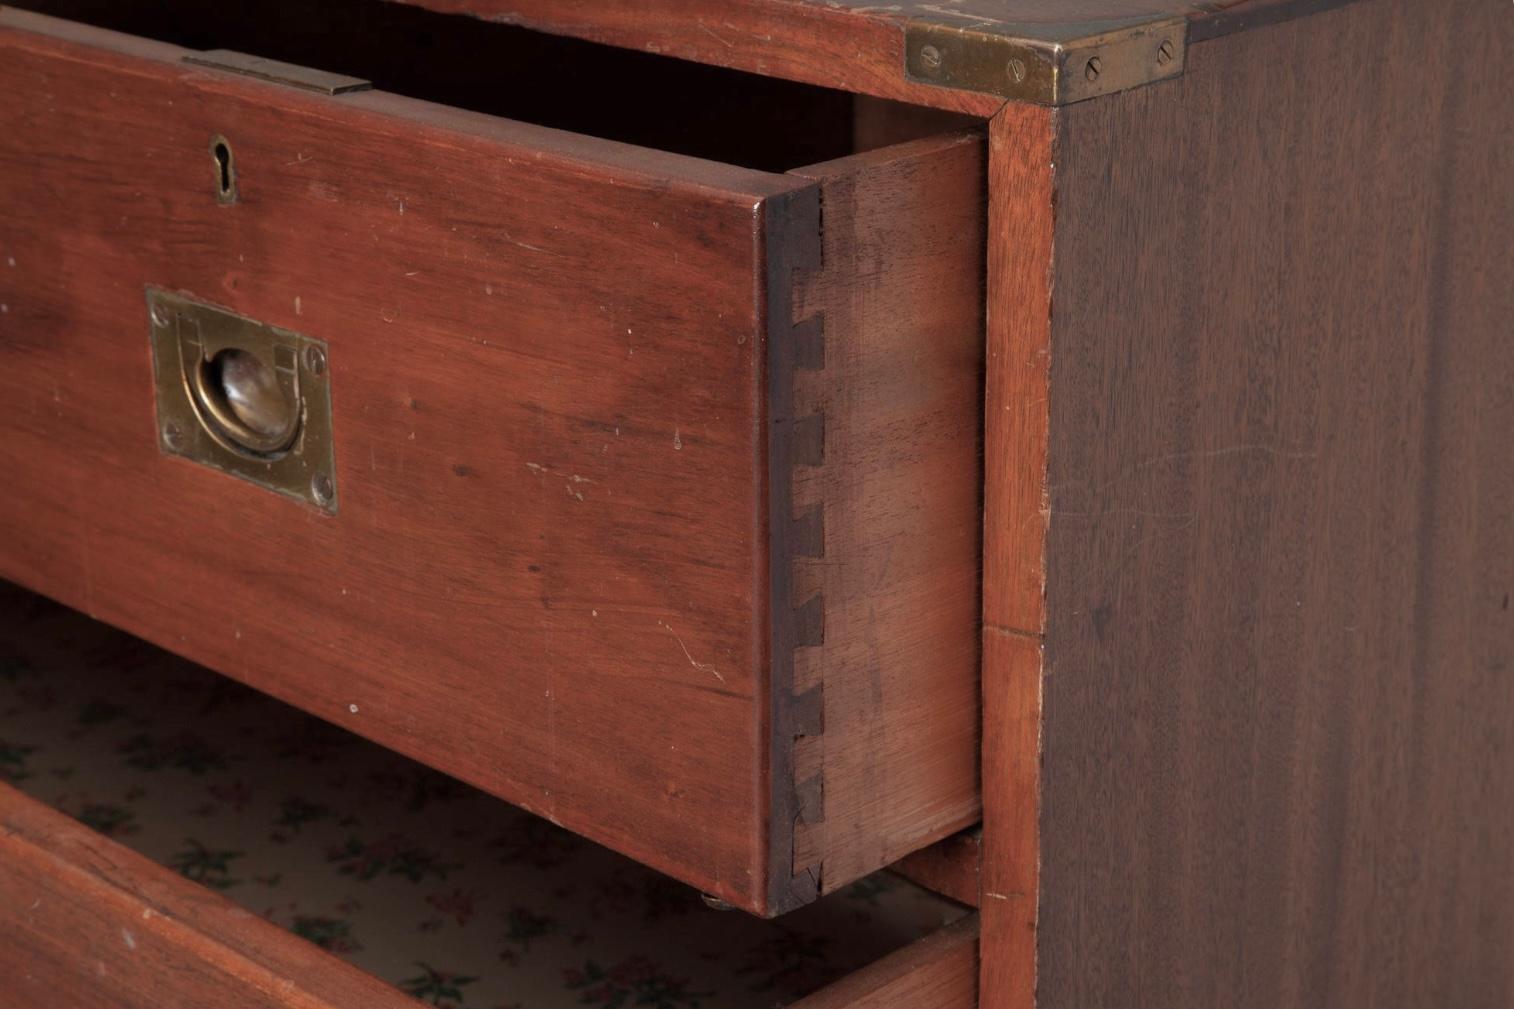 19. Jahrhundert Viktorianische Mahagoni Campaigner Chest. Die Kommode hat oben zwei kurze Schubladen und darunter drei längere Schubladen. Die Truhe besteht aus zwei Teilen. Original Messingbeschläge. Schöne Patina. Hat Herstellerstempel auf